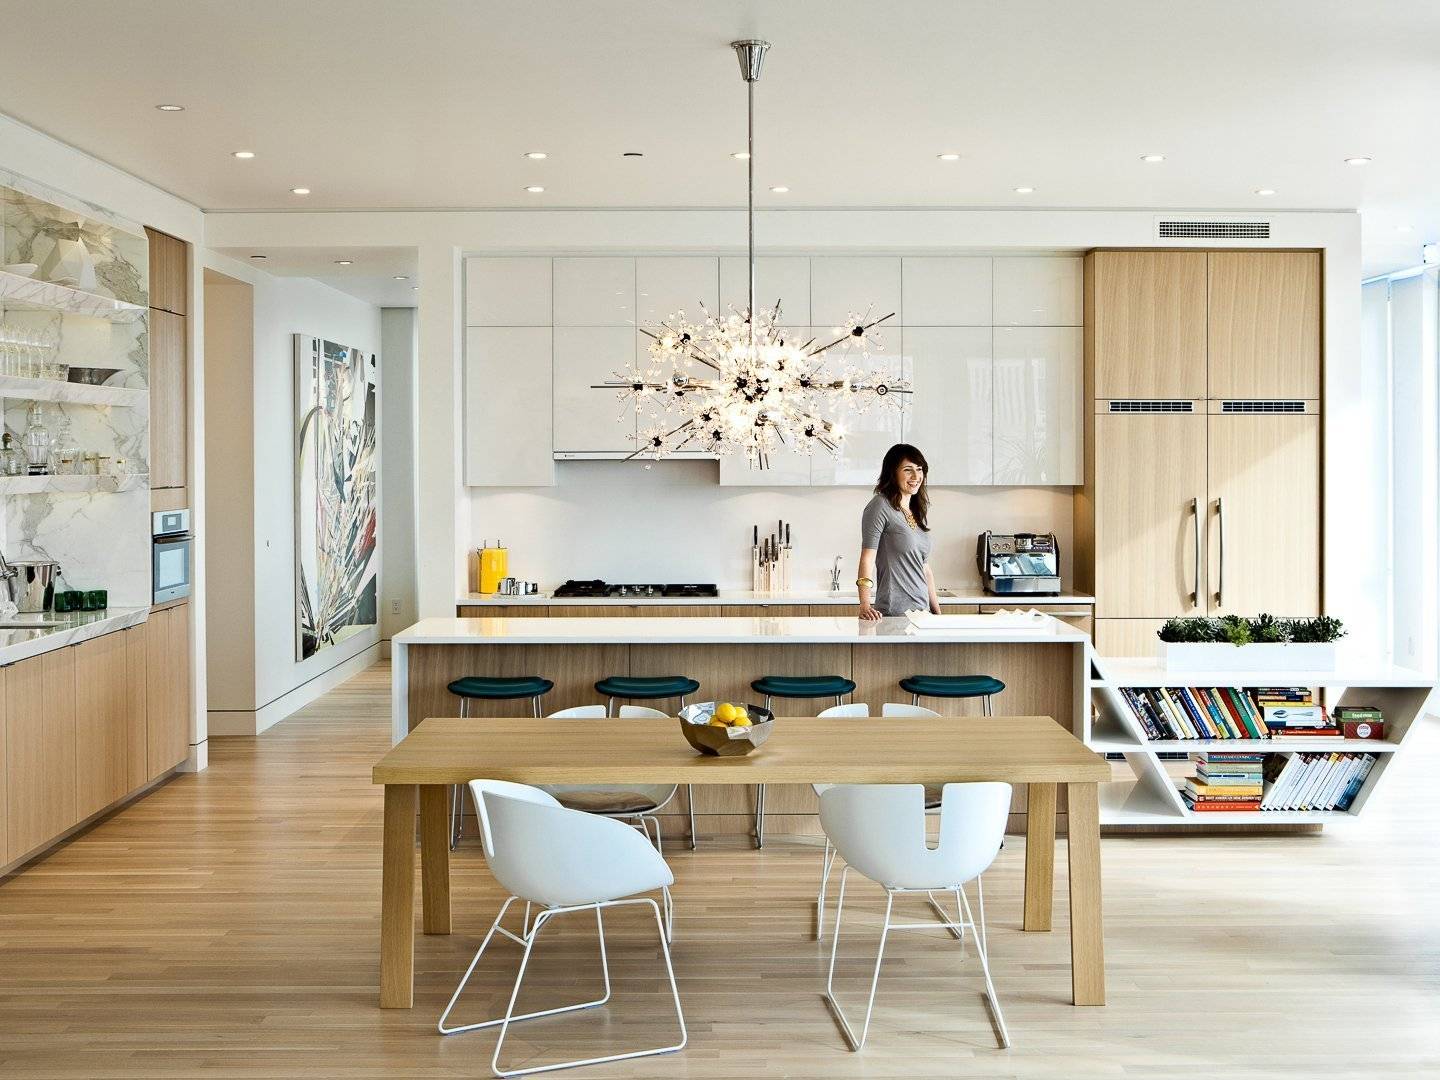 Дизайн кухни и столовой в стиле эко: 585 фото лучших интерьеров на inmyroom